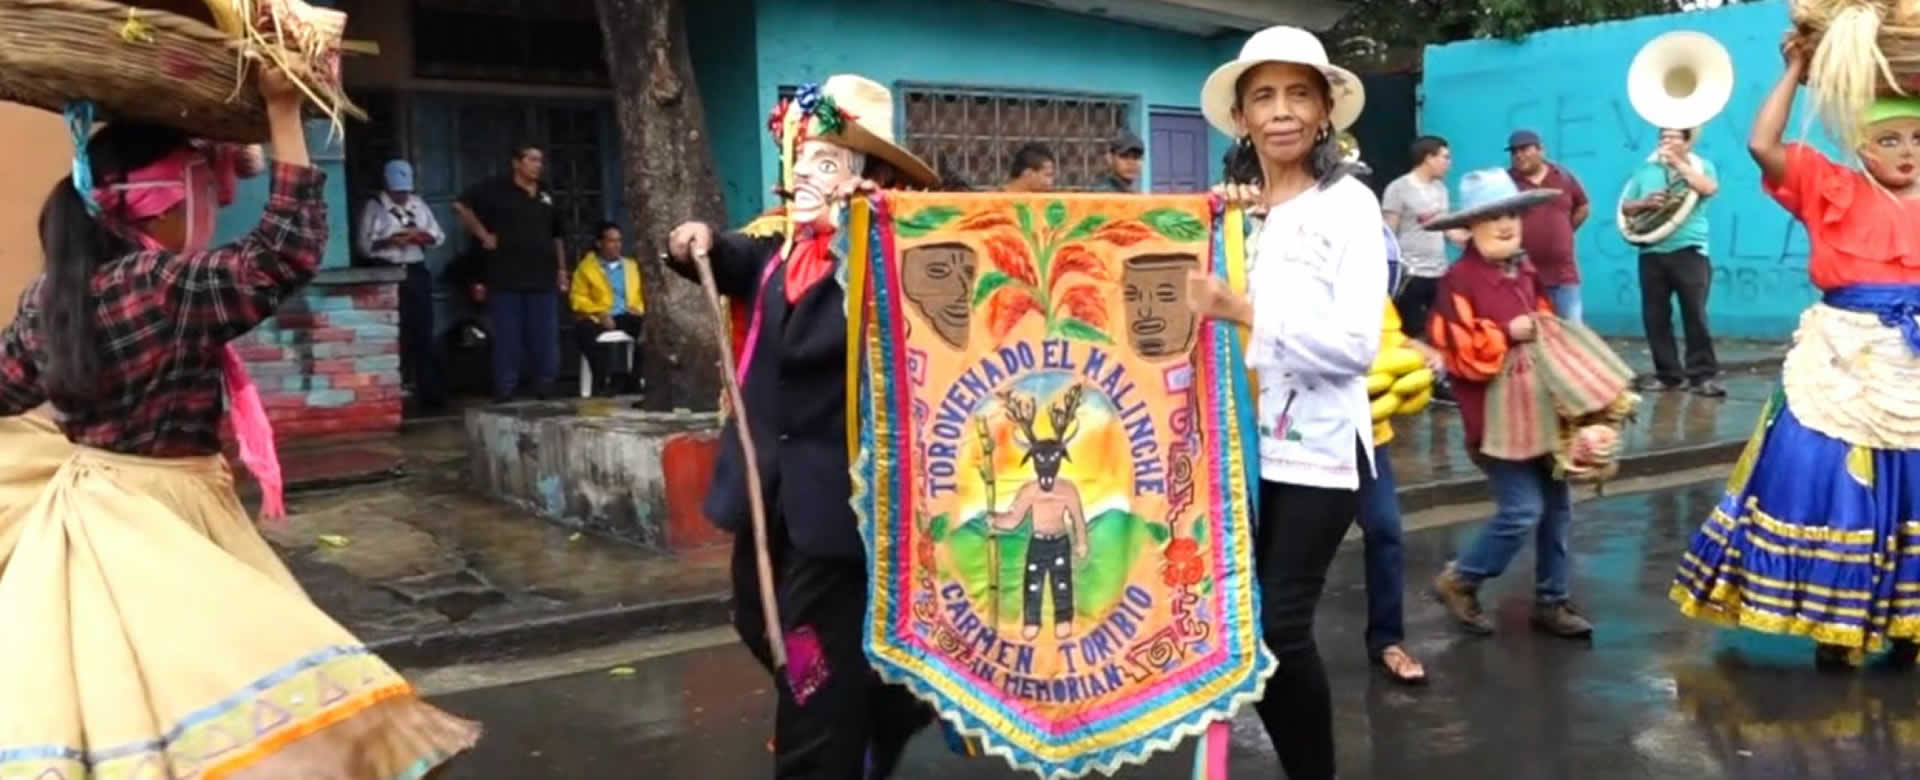 Masaya celebra 130 años del Torovenado "El Malinche" con gran algarabía